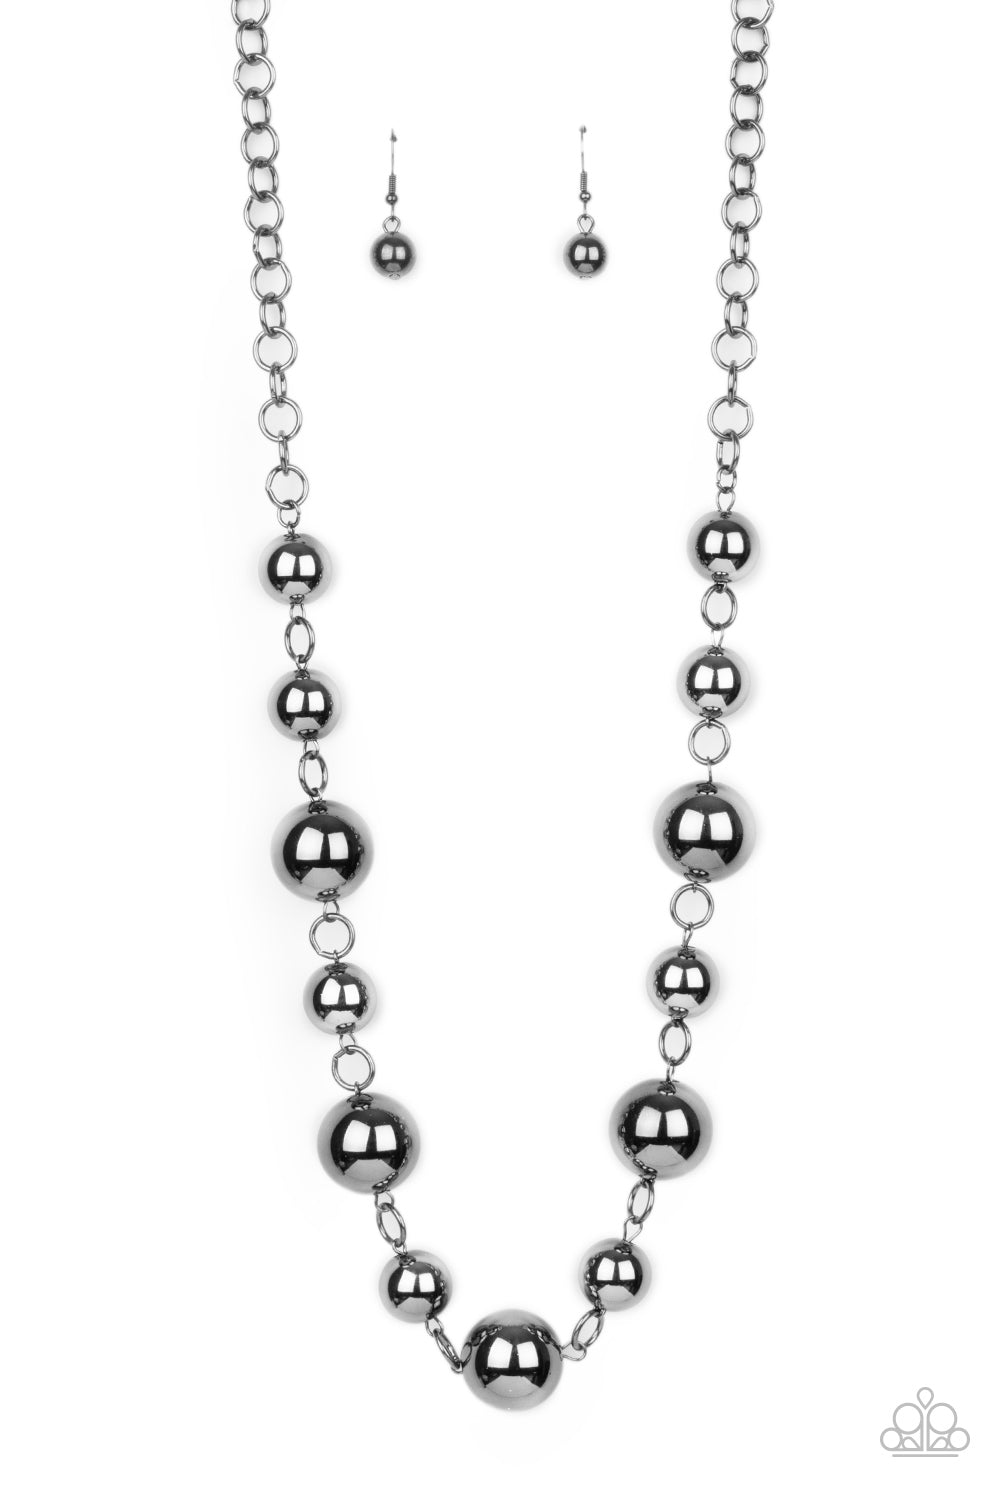 Commanding Composure Black Necklace - Paparazzi Accessories